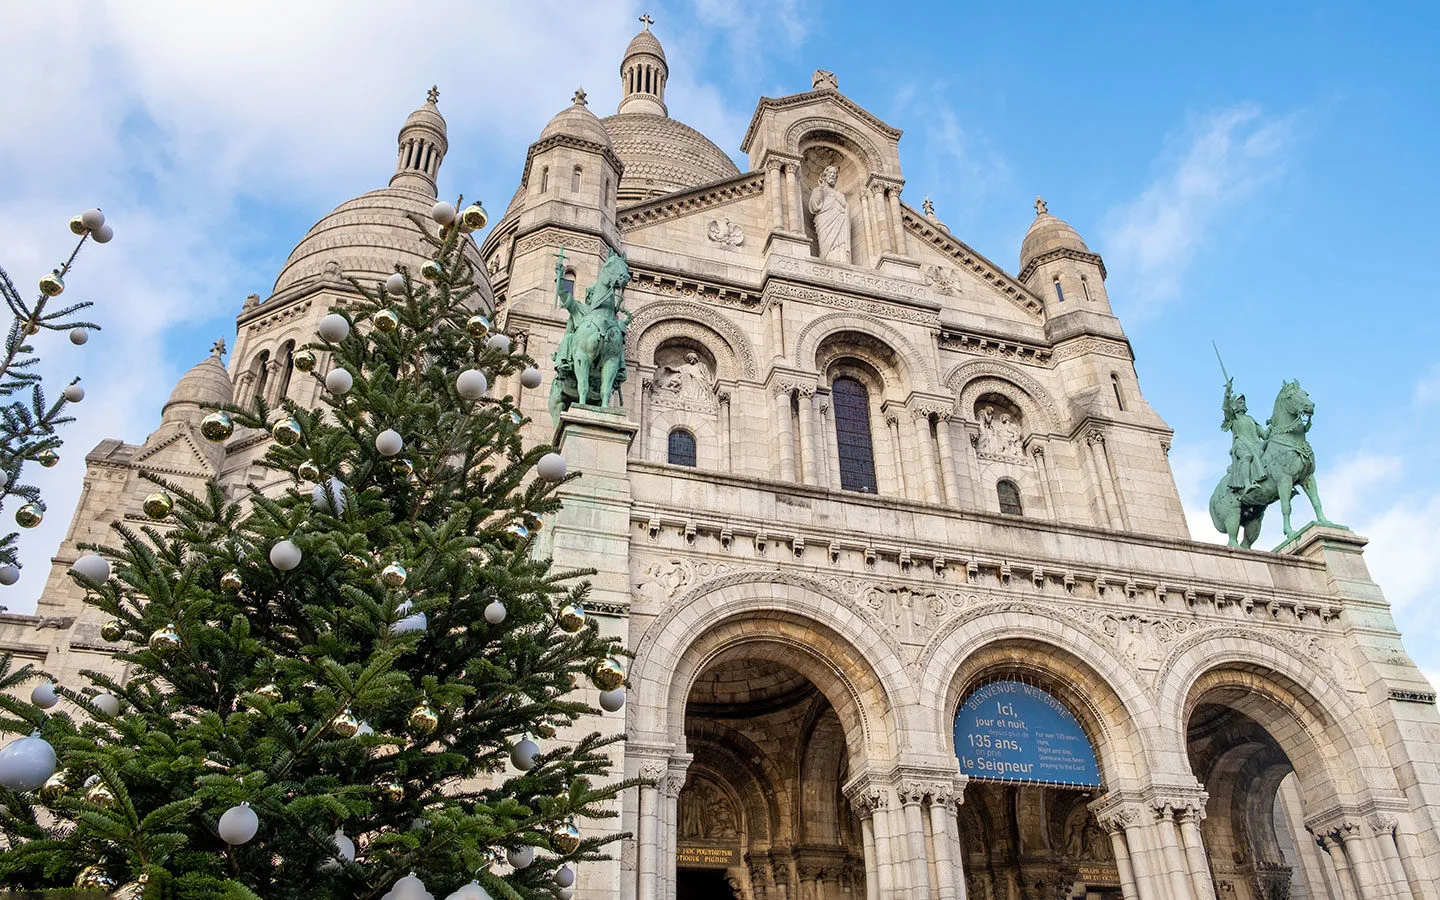 Sacre-Coeur Basilica in Paris at Christmas